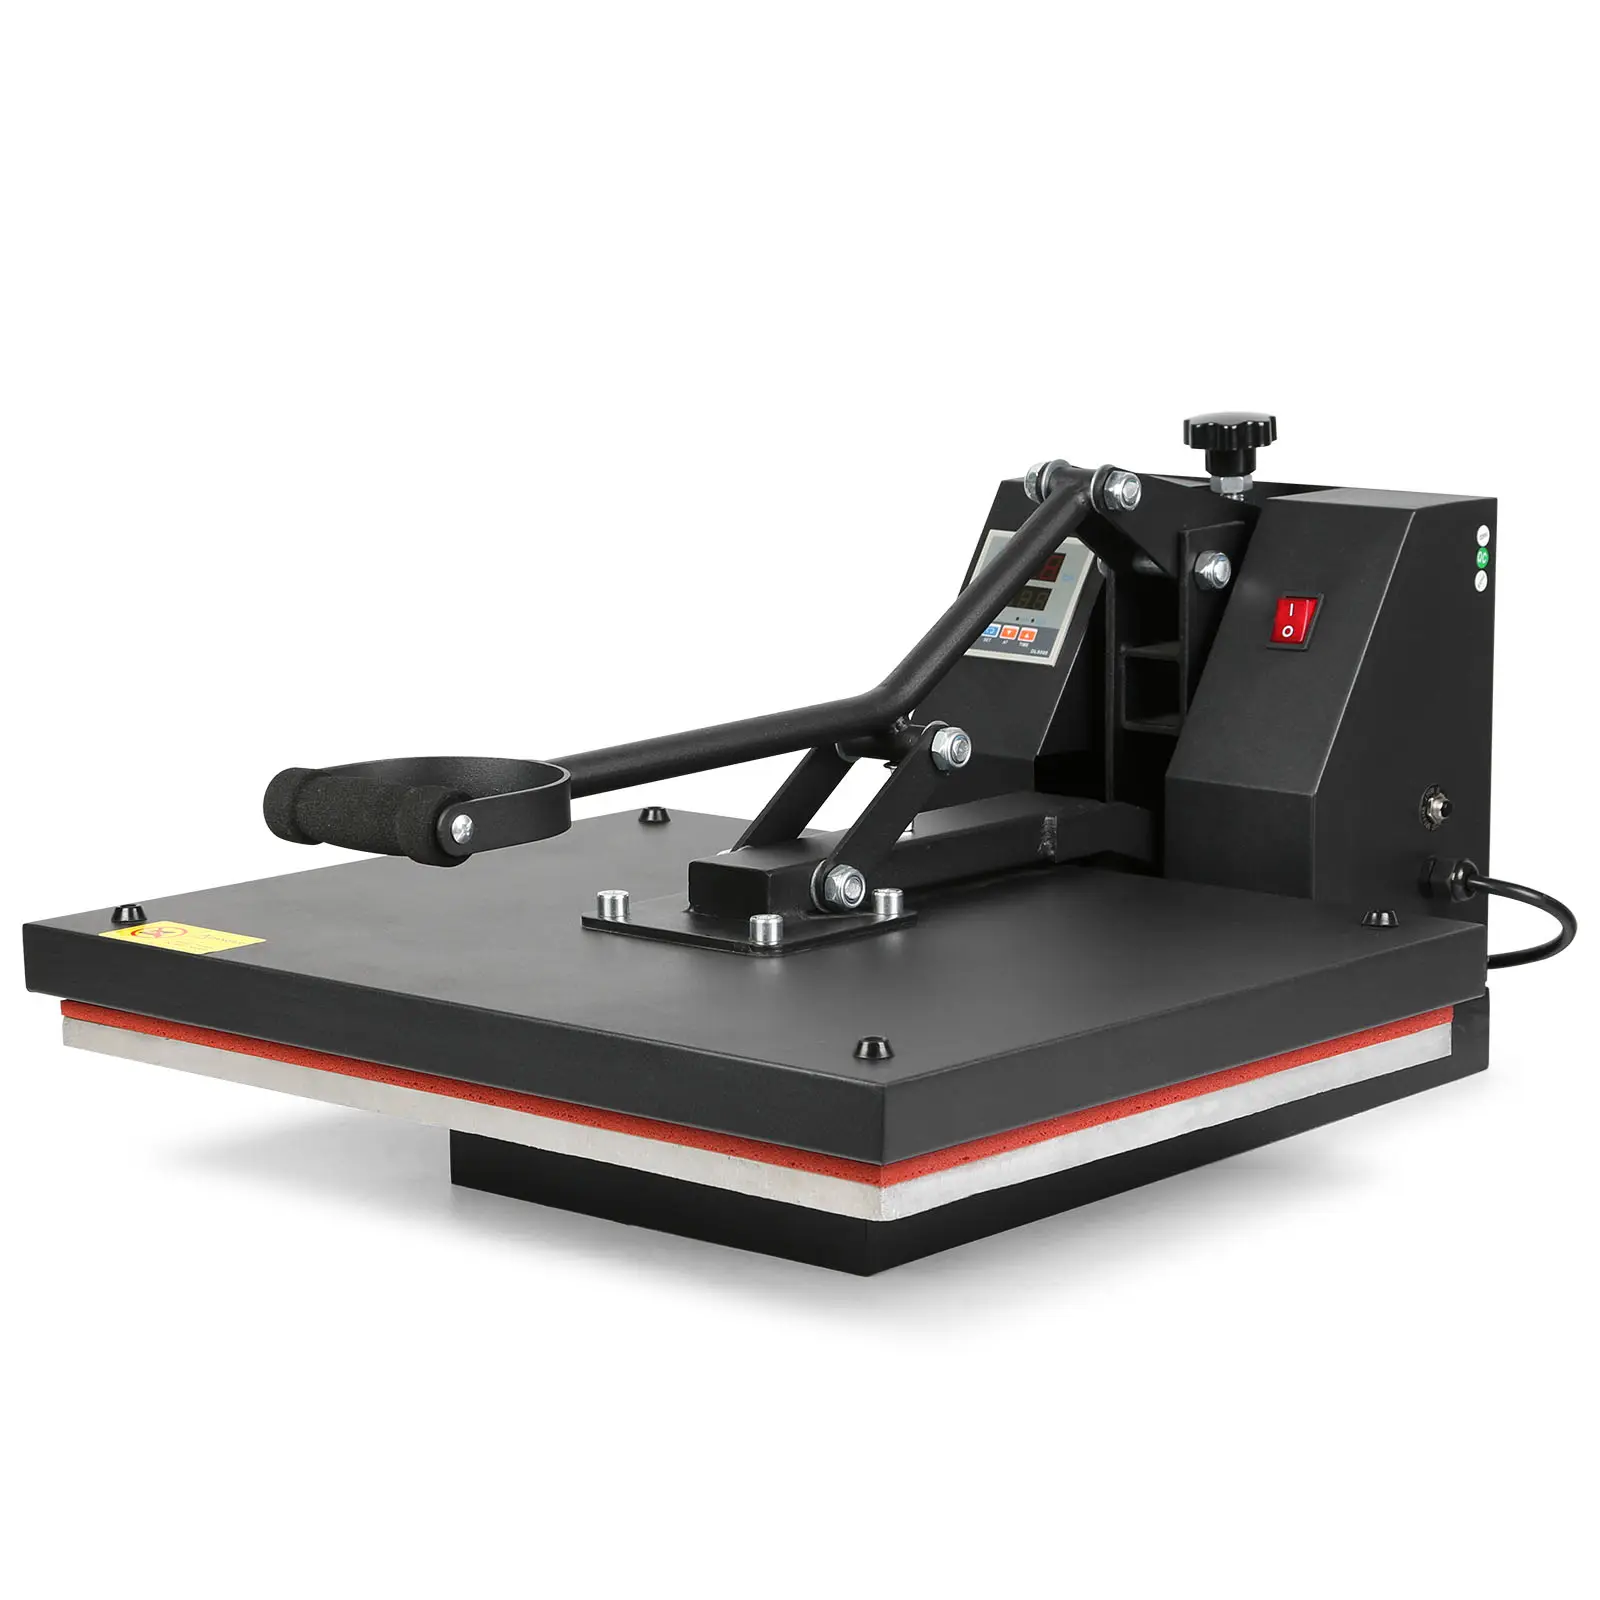 Digital de la cubierta 16 "X 20" (40X50cm) de la prensa del calor de la máquina de transferencia de camiseta de sublimación máquina